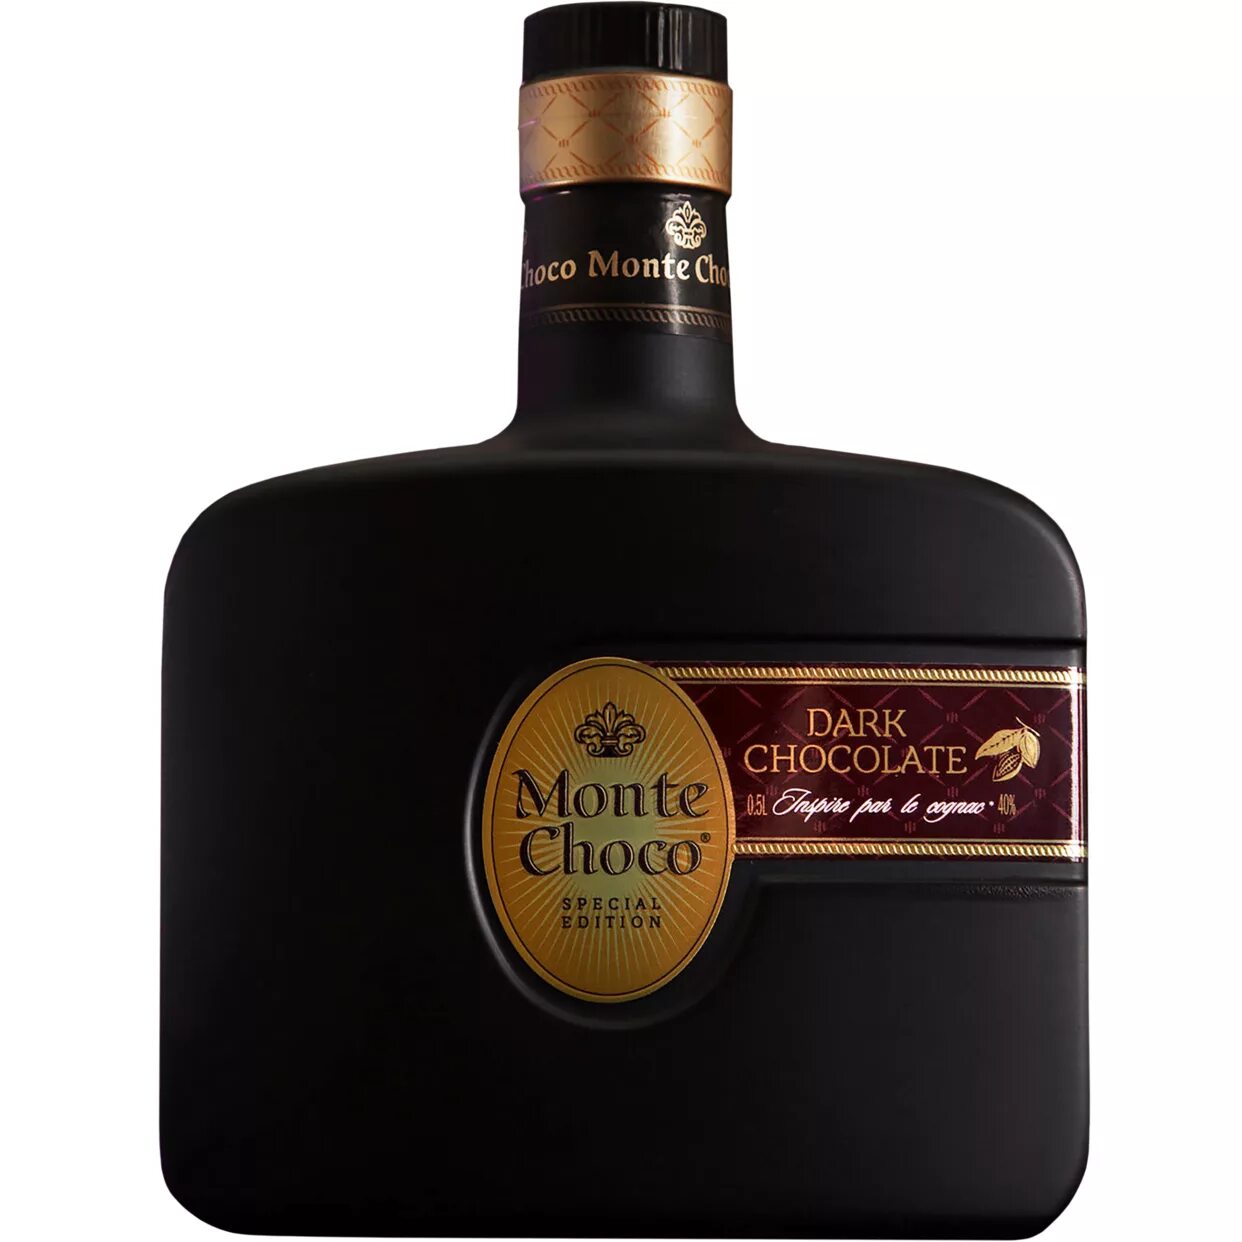 Коньяк монте шоко. Монте Чоко дарк чоколате. "Monte Choco" Dark Chocolate, 0.5 л. Кокт.Monte.Choco Dark Chocolate 40% 0.5. Коньяк Monte Choco Dark Chocolate.